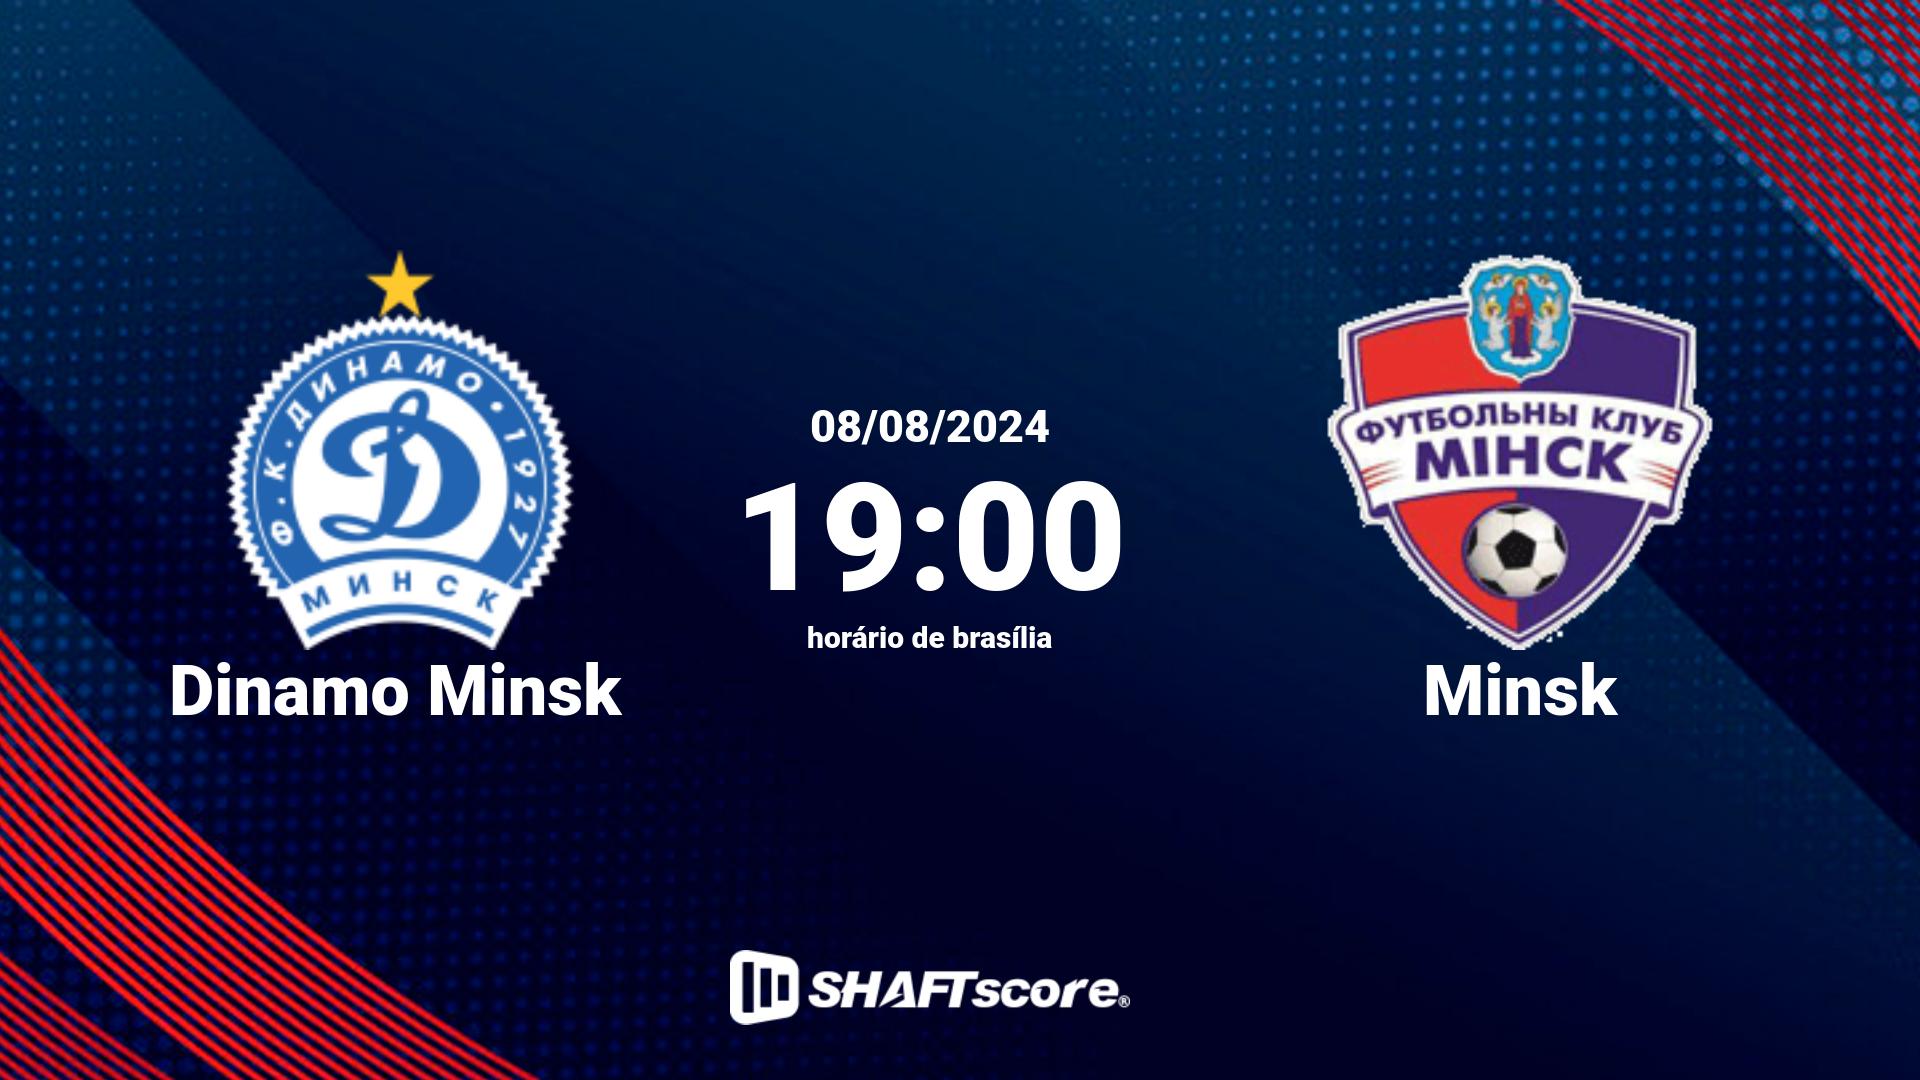 Estatísticas do jogo Dinamo Minsk vs Minsk 08.08 19:00